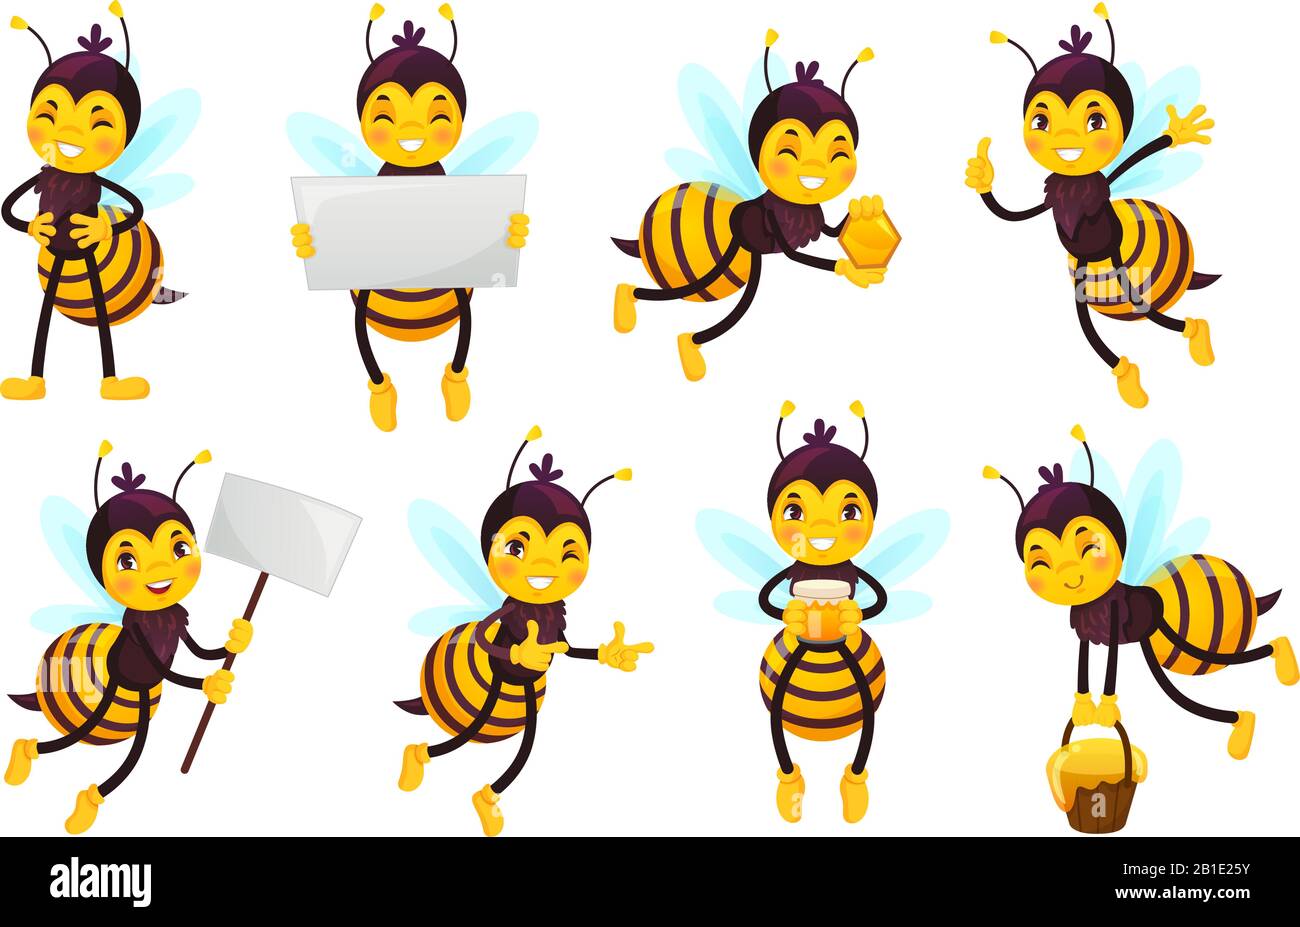 Personaggio fumetto ape. Api miele, volare cute honeybee e divertente giallo ape mascotte vettore illustrazione set Illustrazione Vettoriale